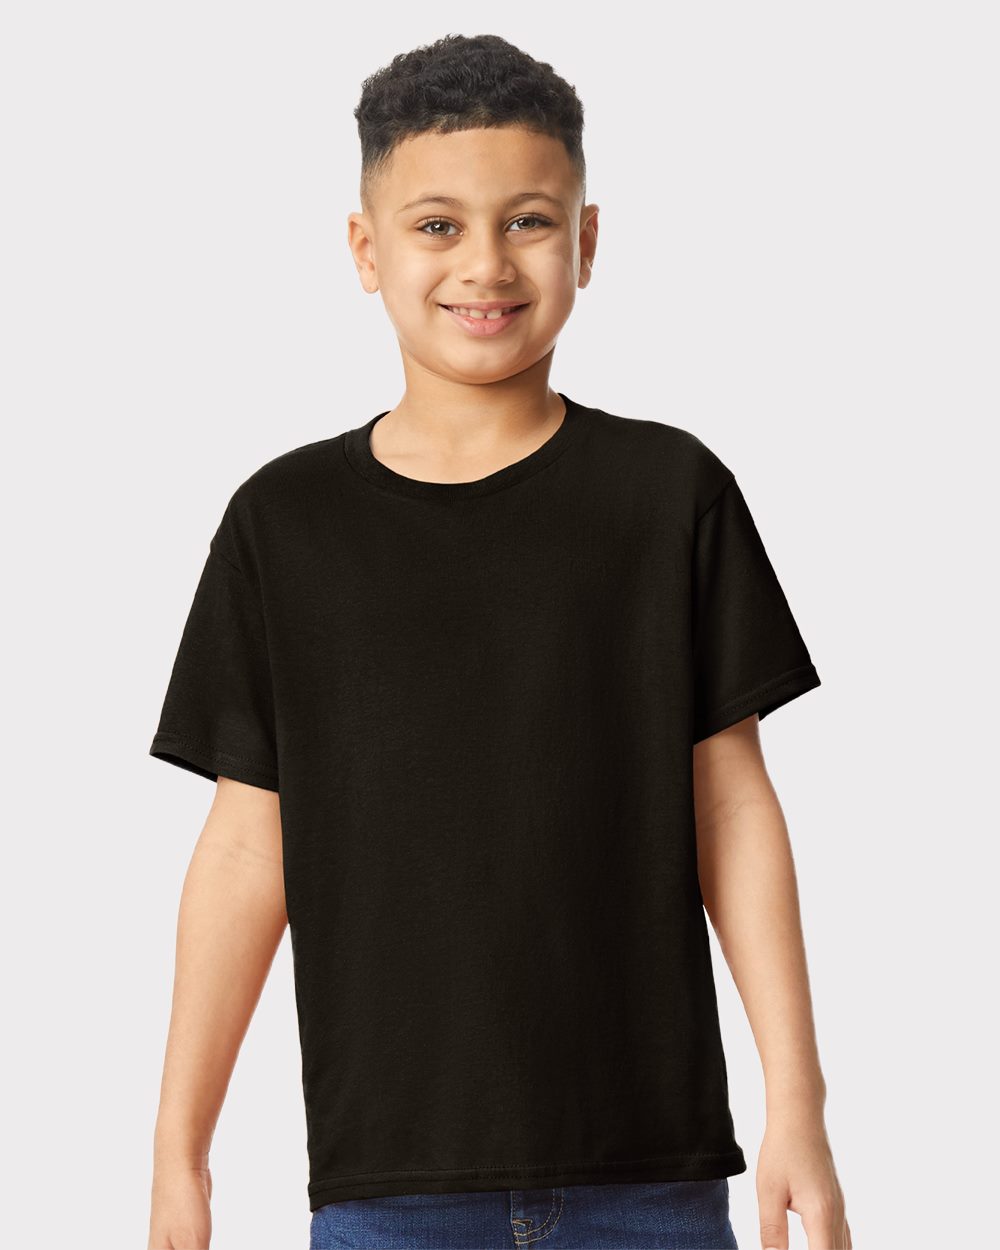 NIB - Big Boys T-Shirts and Tank Tops - Denver - Walmart.com